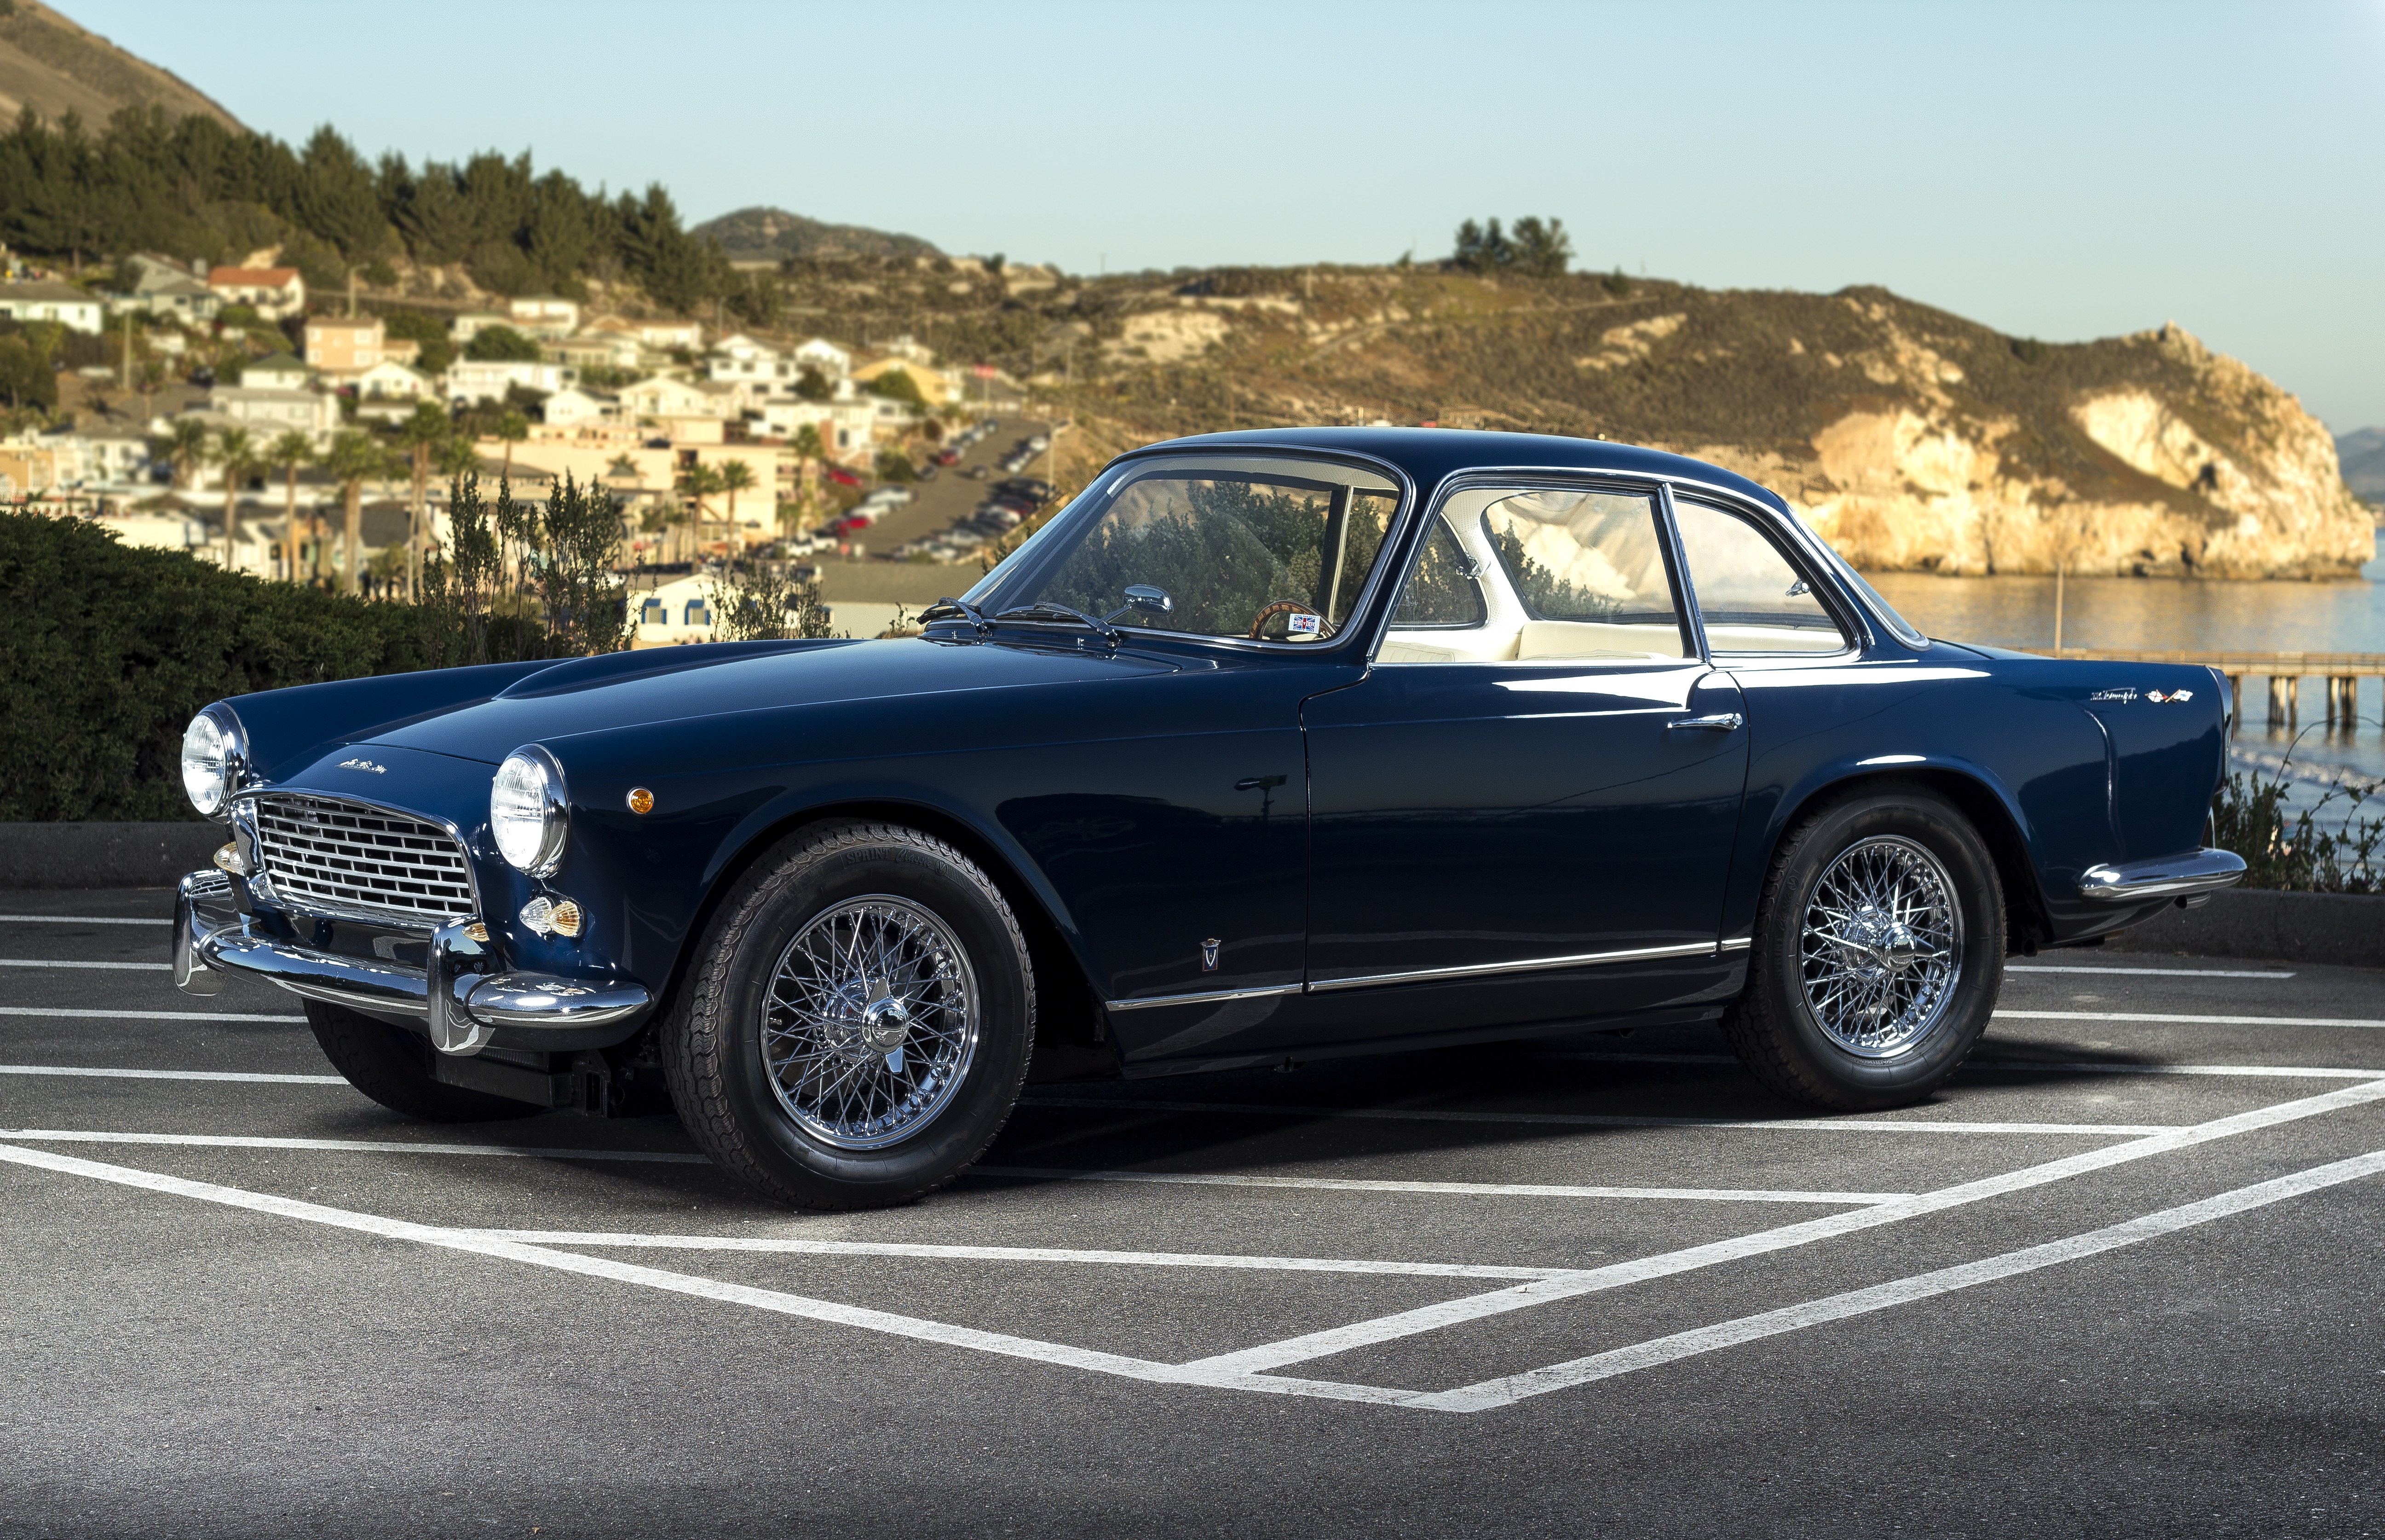 The 1962 Triumph Italia restoration. (Picture courtesy britishsportscars.com).